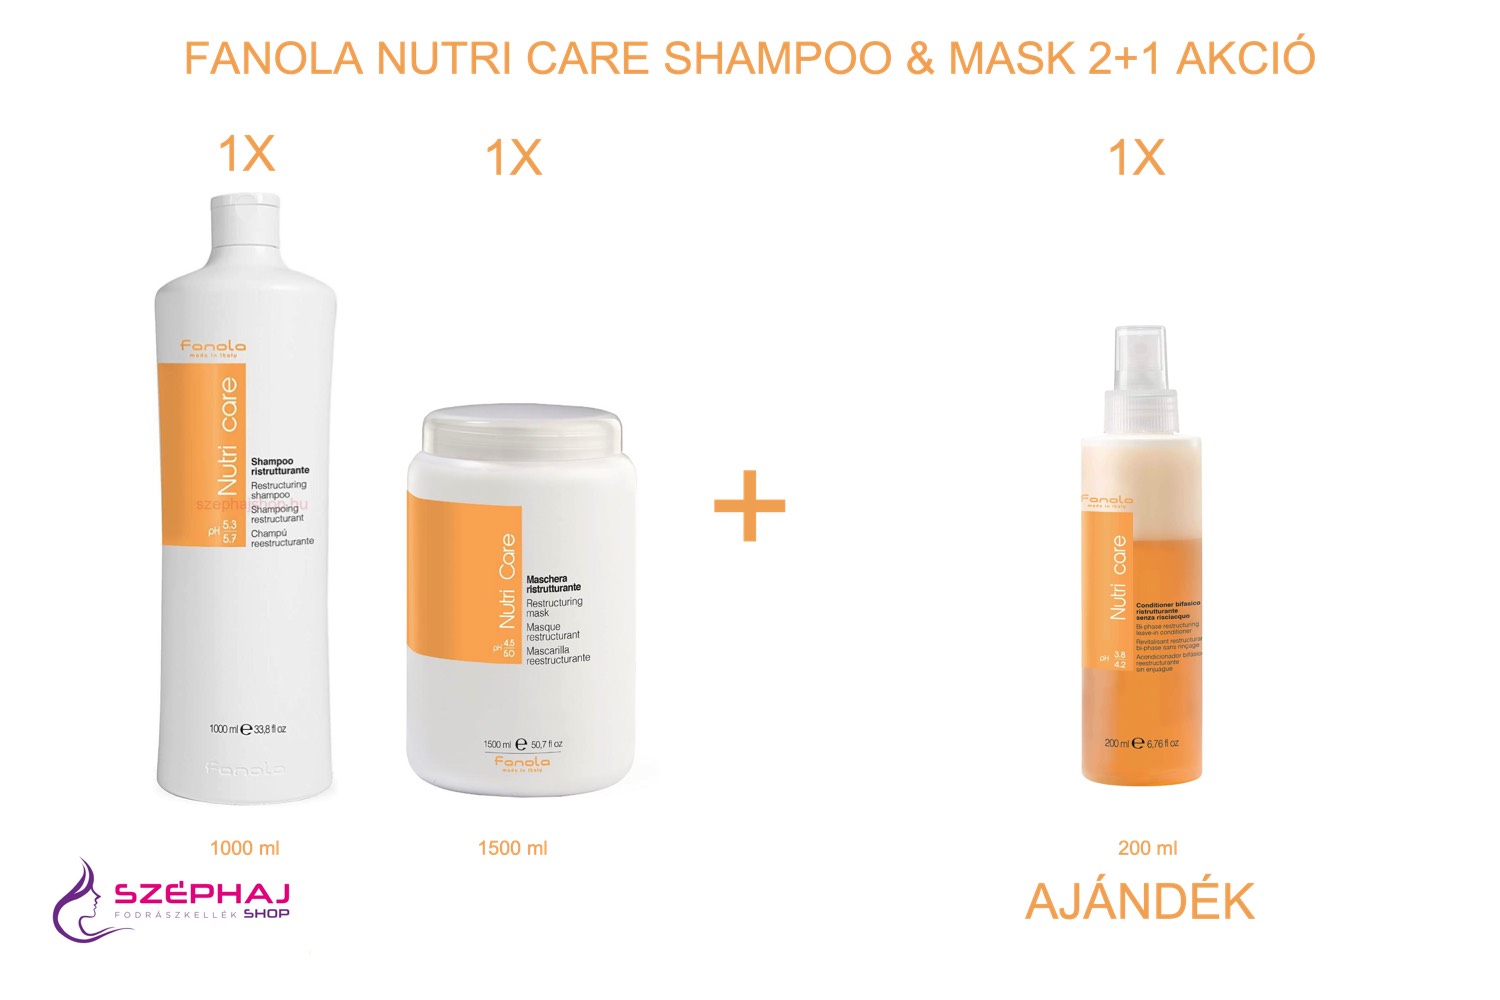 FANOLA Nutri Care Shampoo 1000 ml & Mask 1500 ml  2+1 AKCIÓ